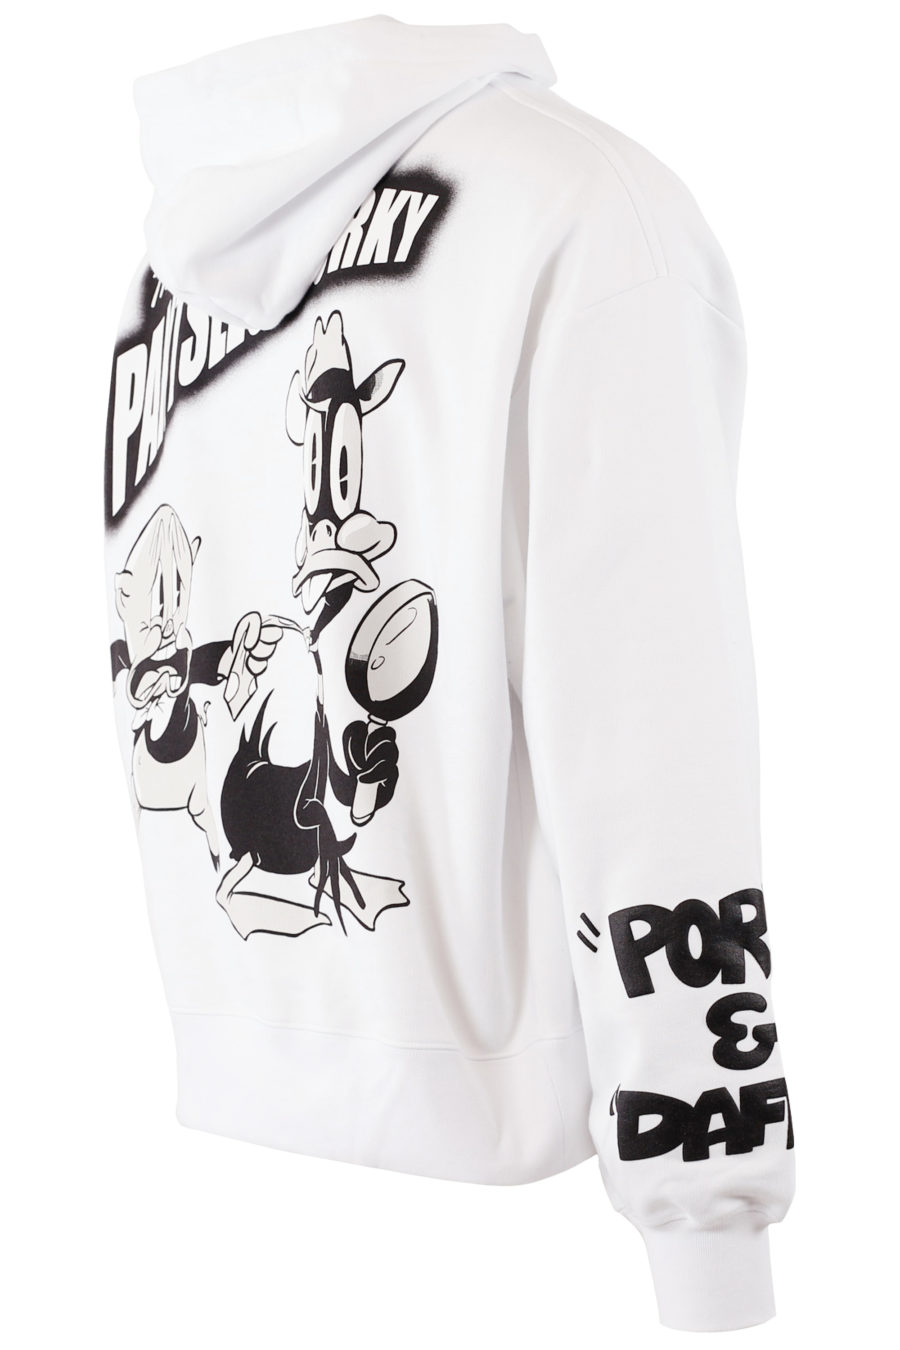 Weißes Kapuzensweatshirt mit Looney Tunes Grafikdruck - IMG 7674 copy